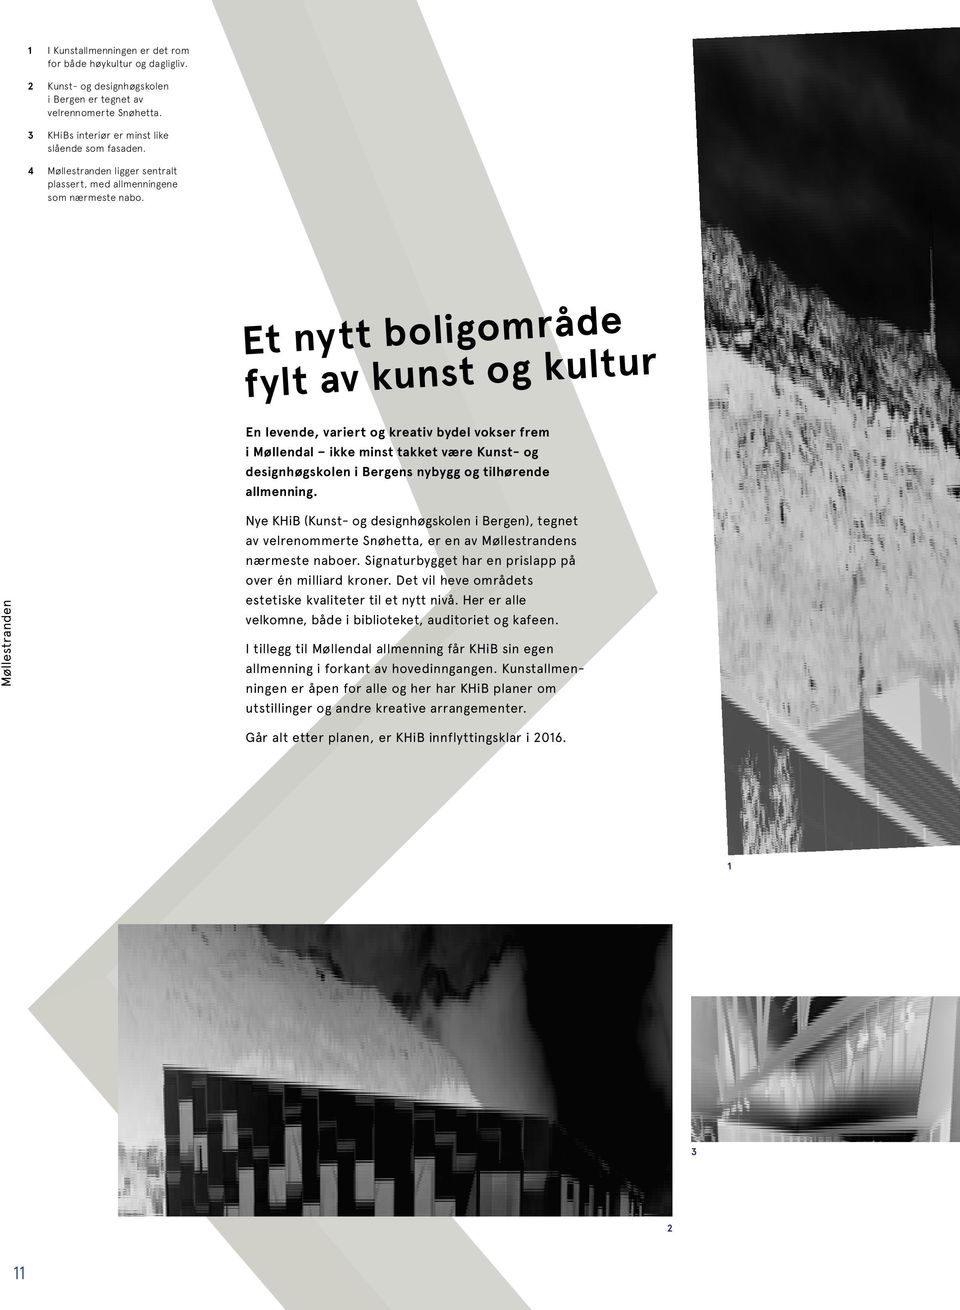 Et nytt boligområde fylt av kunst og kultur En levende, variert og kreativ bydel vokser frem i Møllendal ikke minst takket være Kunst- og designhøgskolen i Bergens nybygg og tilhørende allmenning.